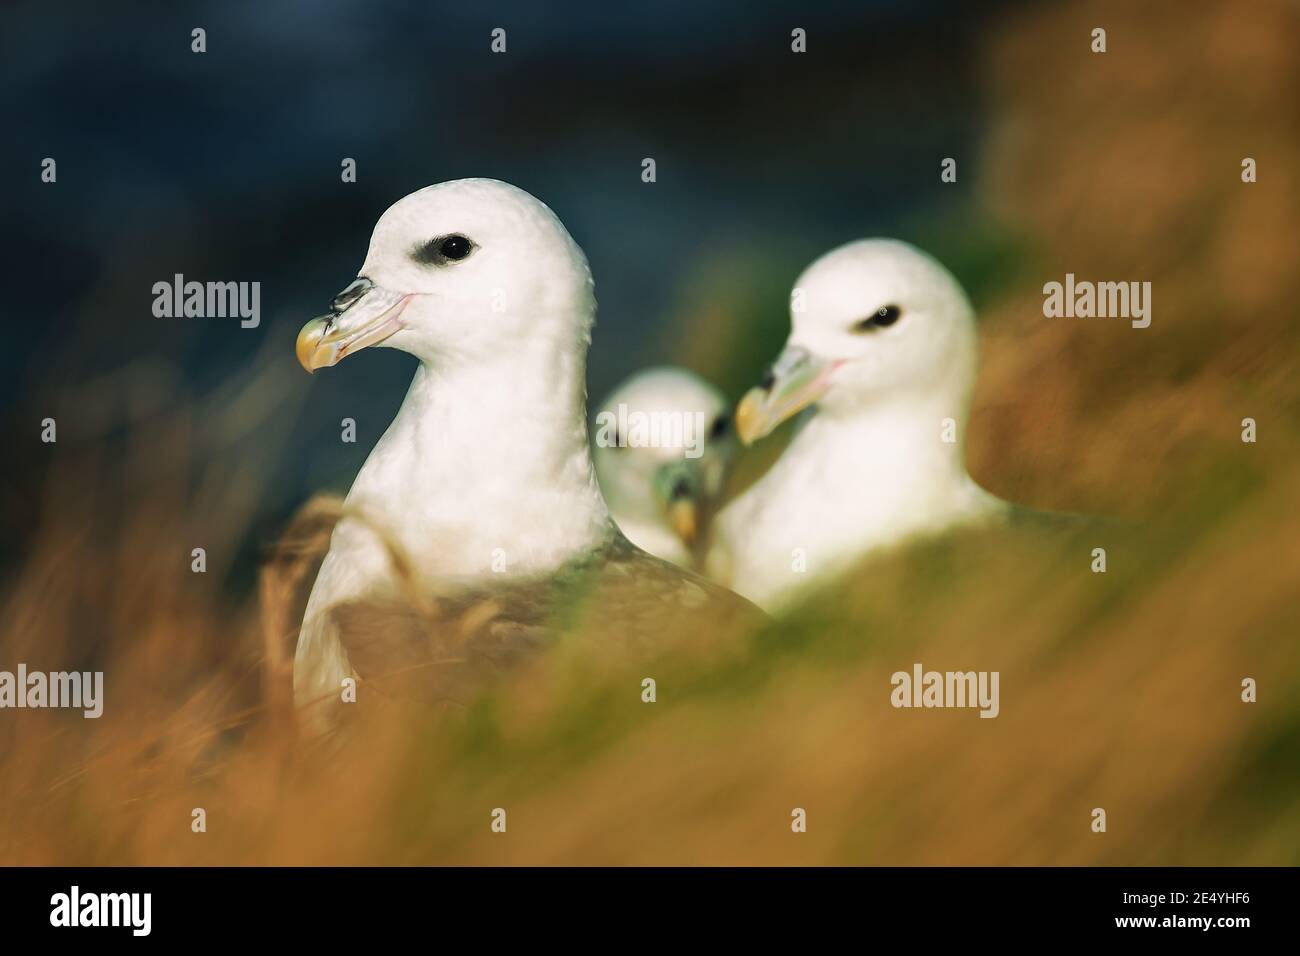 Cerca de un grupo de pájaros fulmarus glacialis fumars sentados En el borde del acantilado entre la hierba marrón seca en las islas de Orkney costa Foto de stock